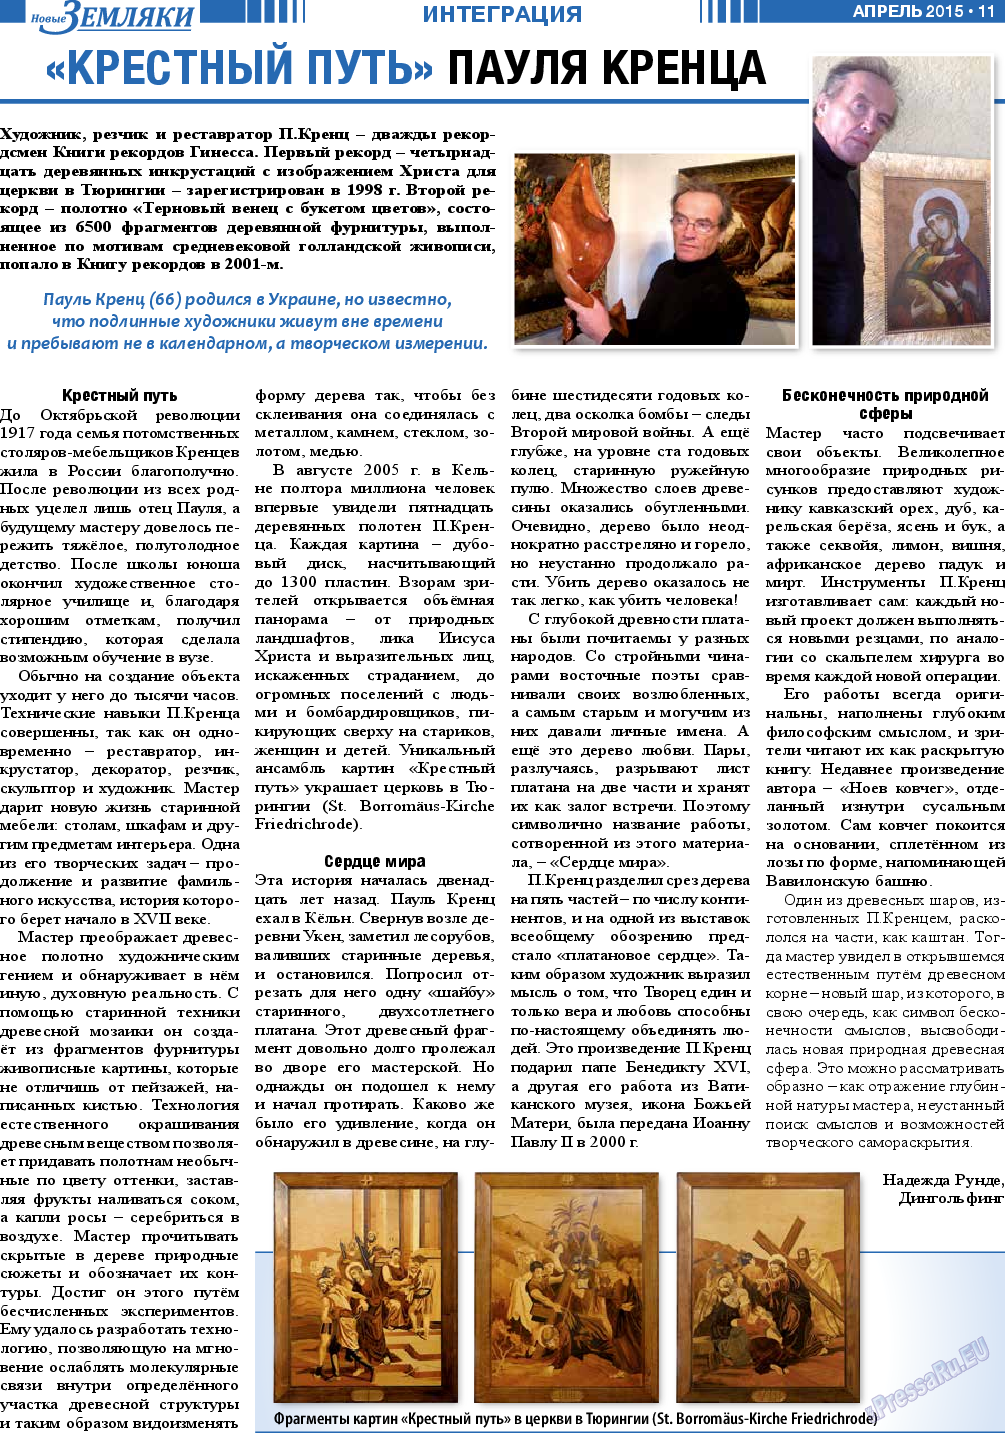 Новые Земляки, газета. 2015 №4 стр.11